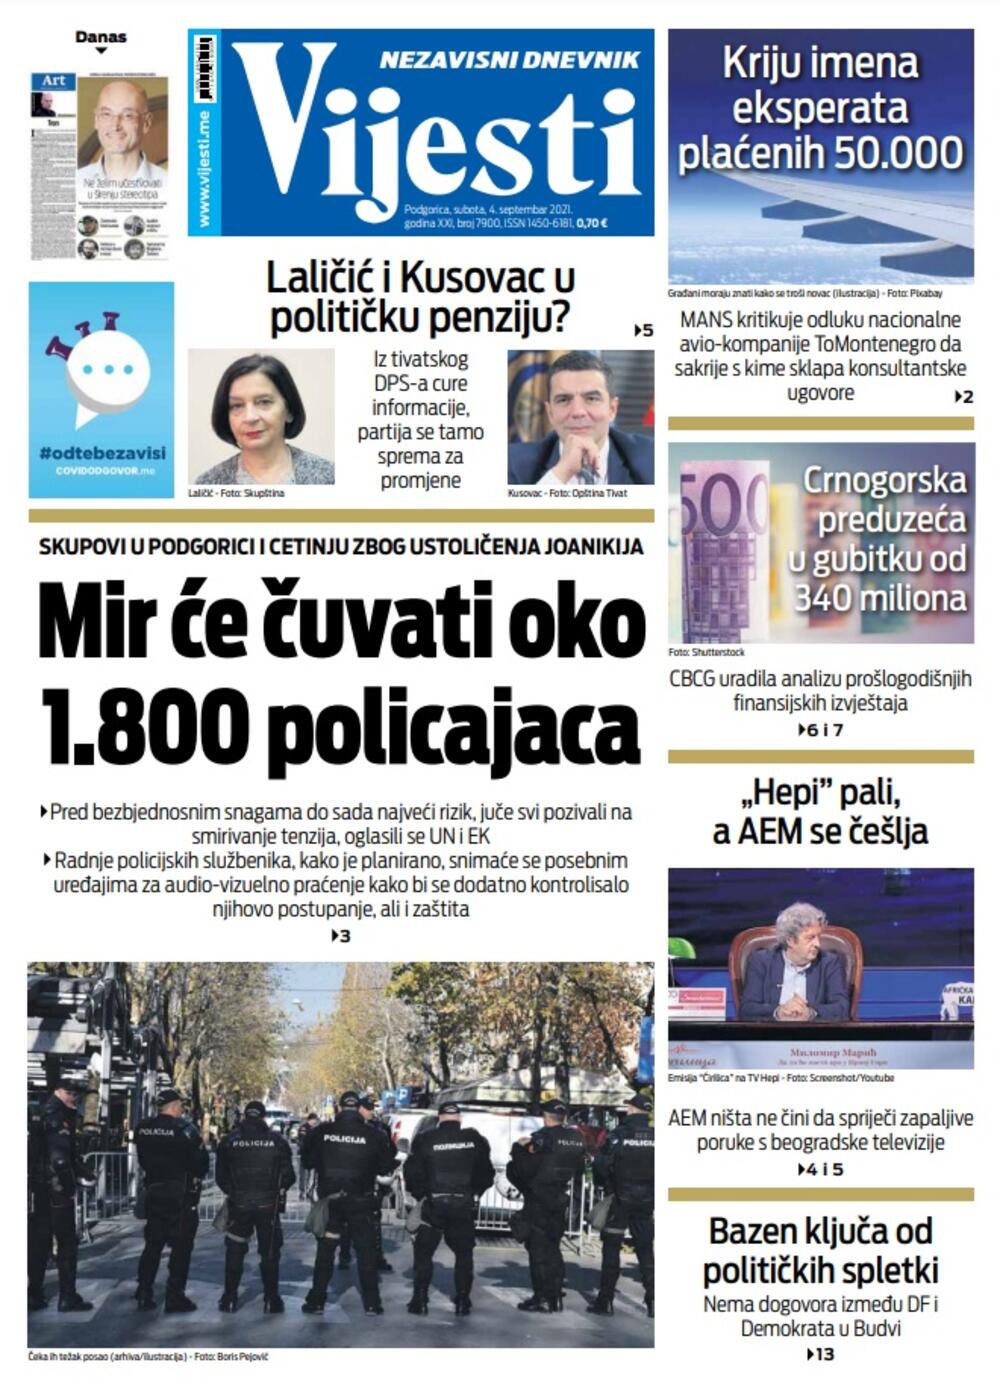 Naslovna strana "Vijesti" za 4. septembar 2021., Foto: Vijesti